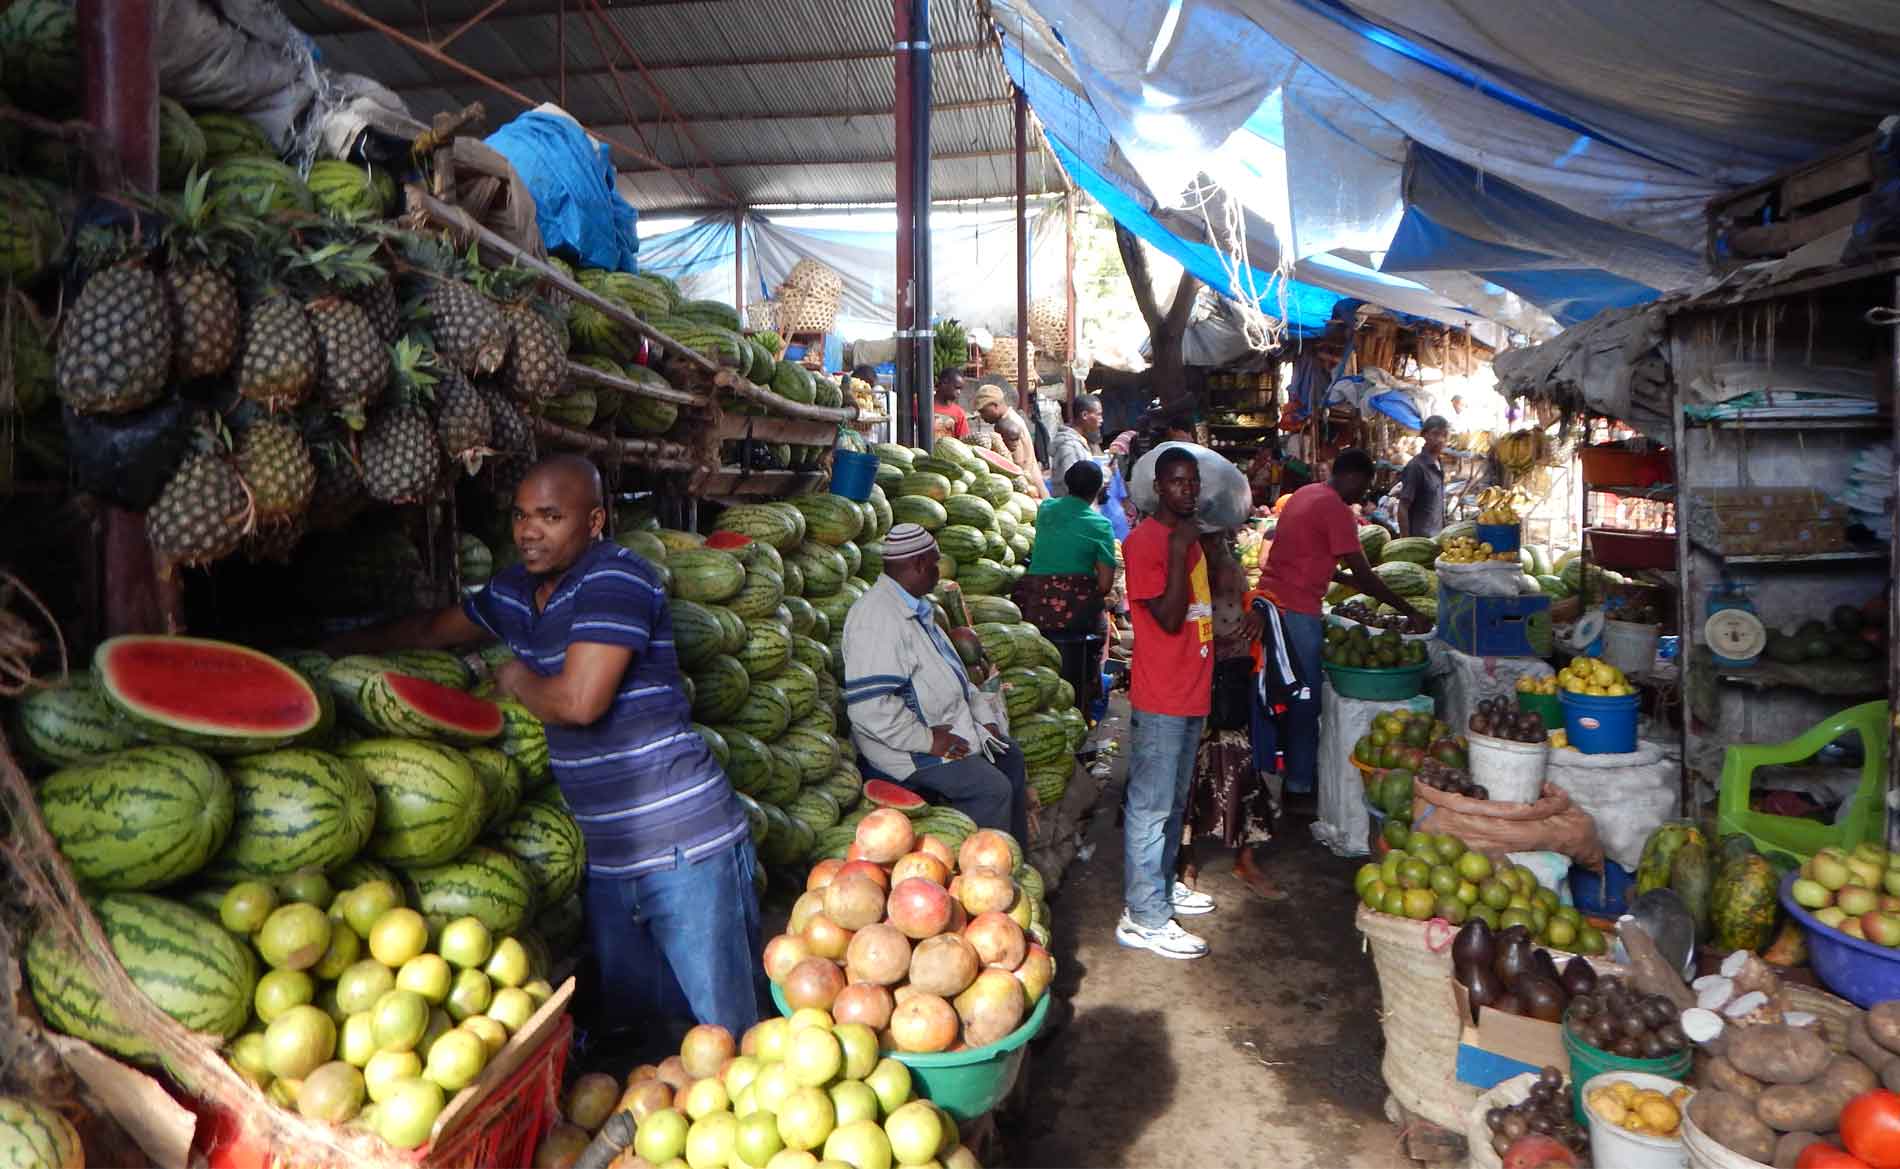 Auf dem Markt in Arusha werden viel Obst und Gemüse angeboten